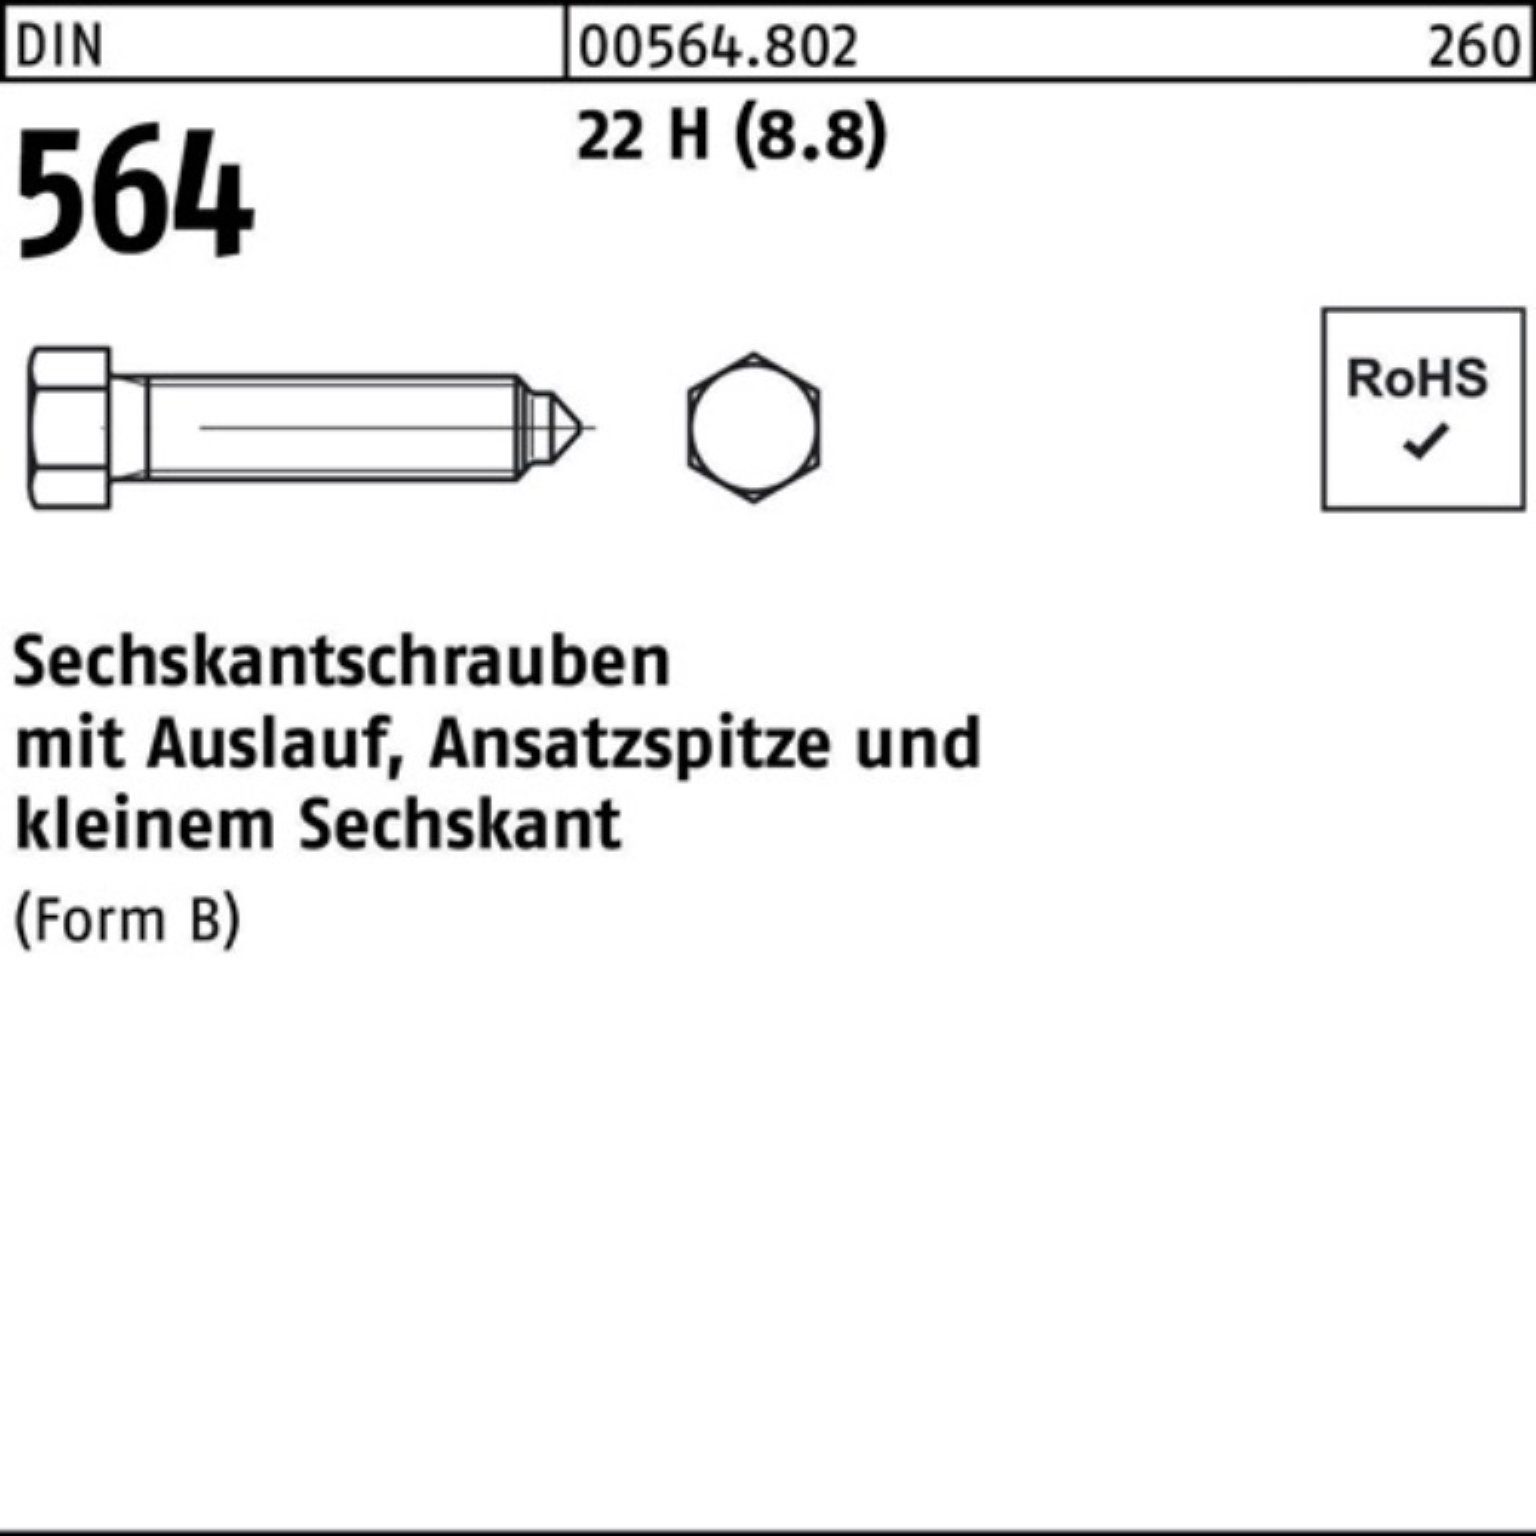 Reyher Sechskantschraube 100er Pack Sechskantschraube DIN 564 Ansatzspitze/Auslauf BM 16x 60 22